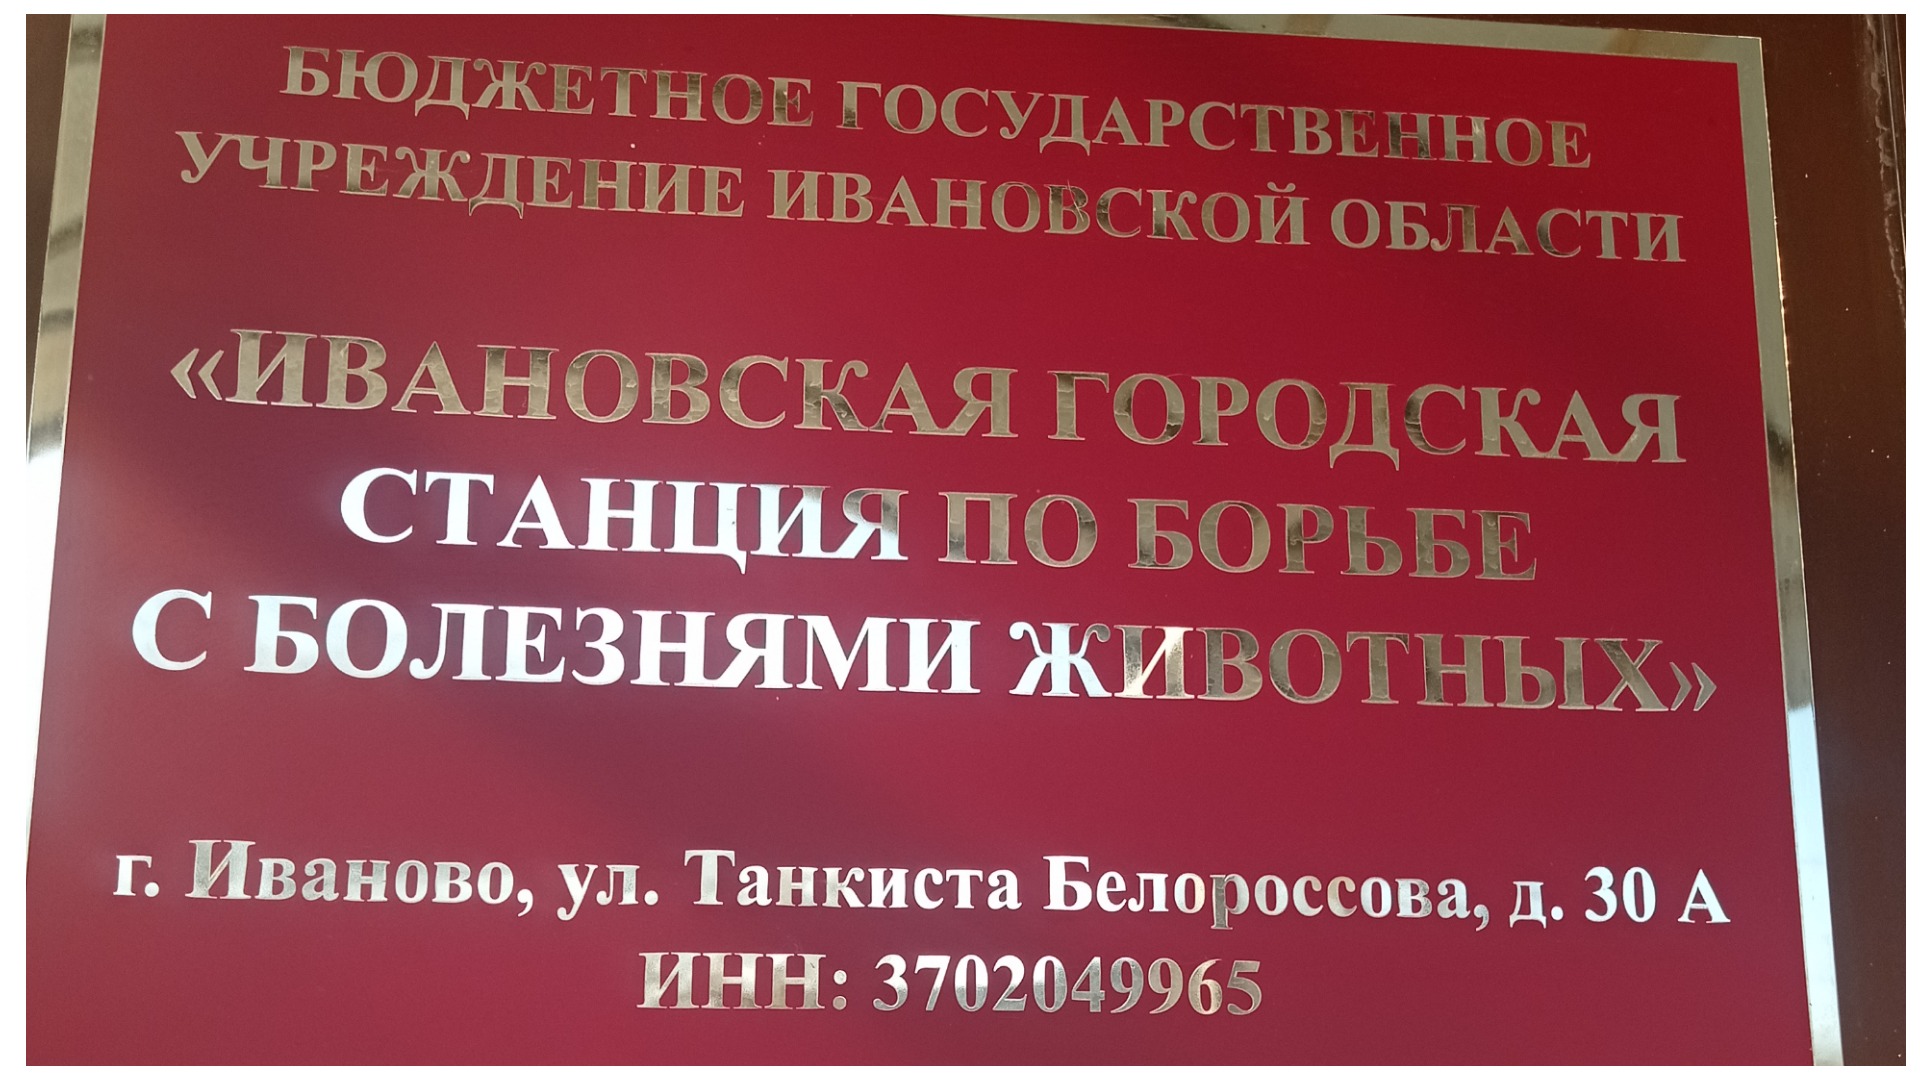 Ветеринарная клиника на Белороссова, Иваново.